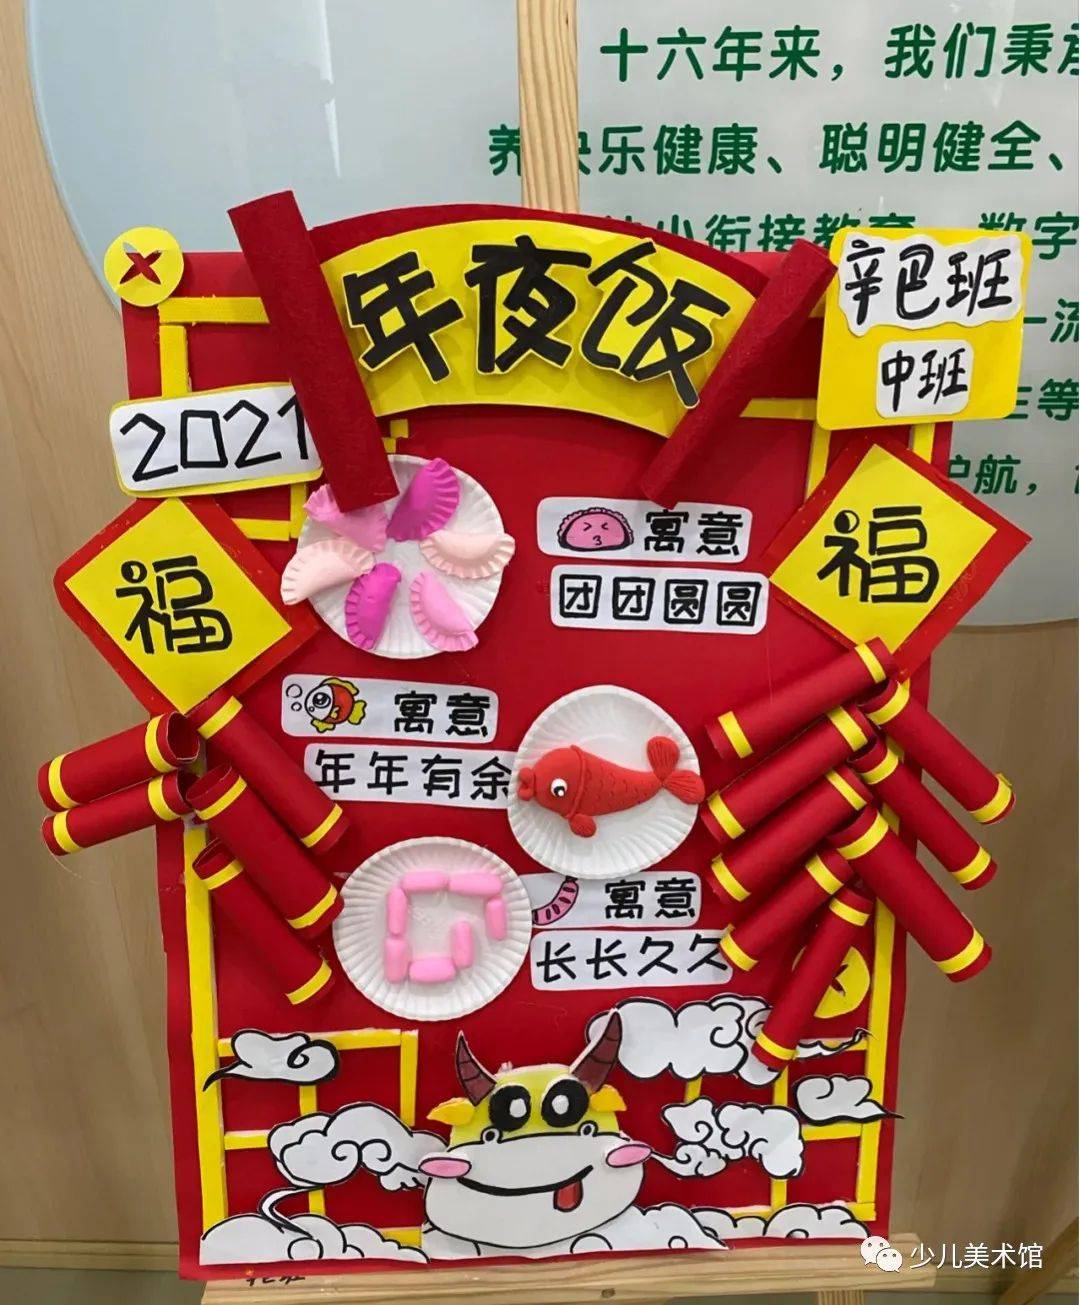 【迎新年系列】幼儿园新年主题手工环创!新年必备!